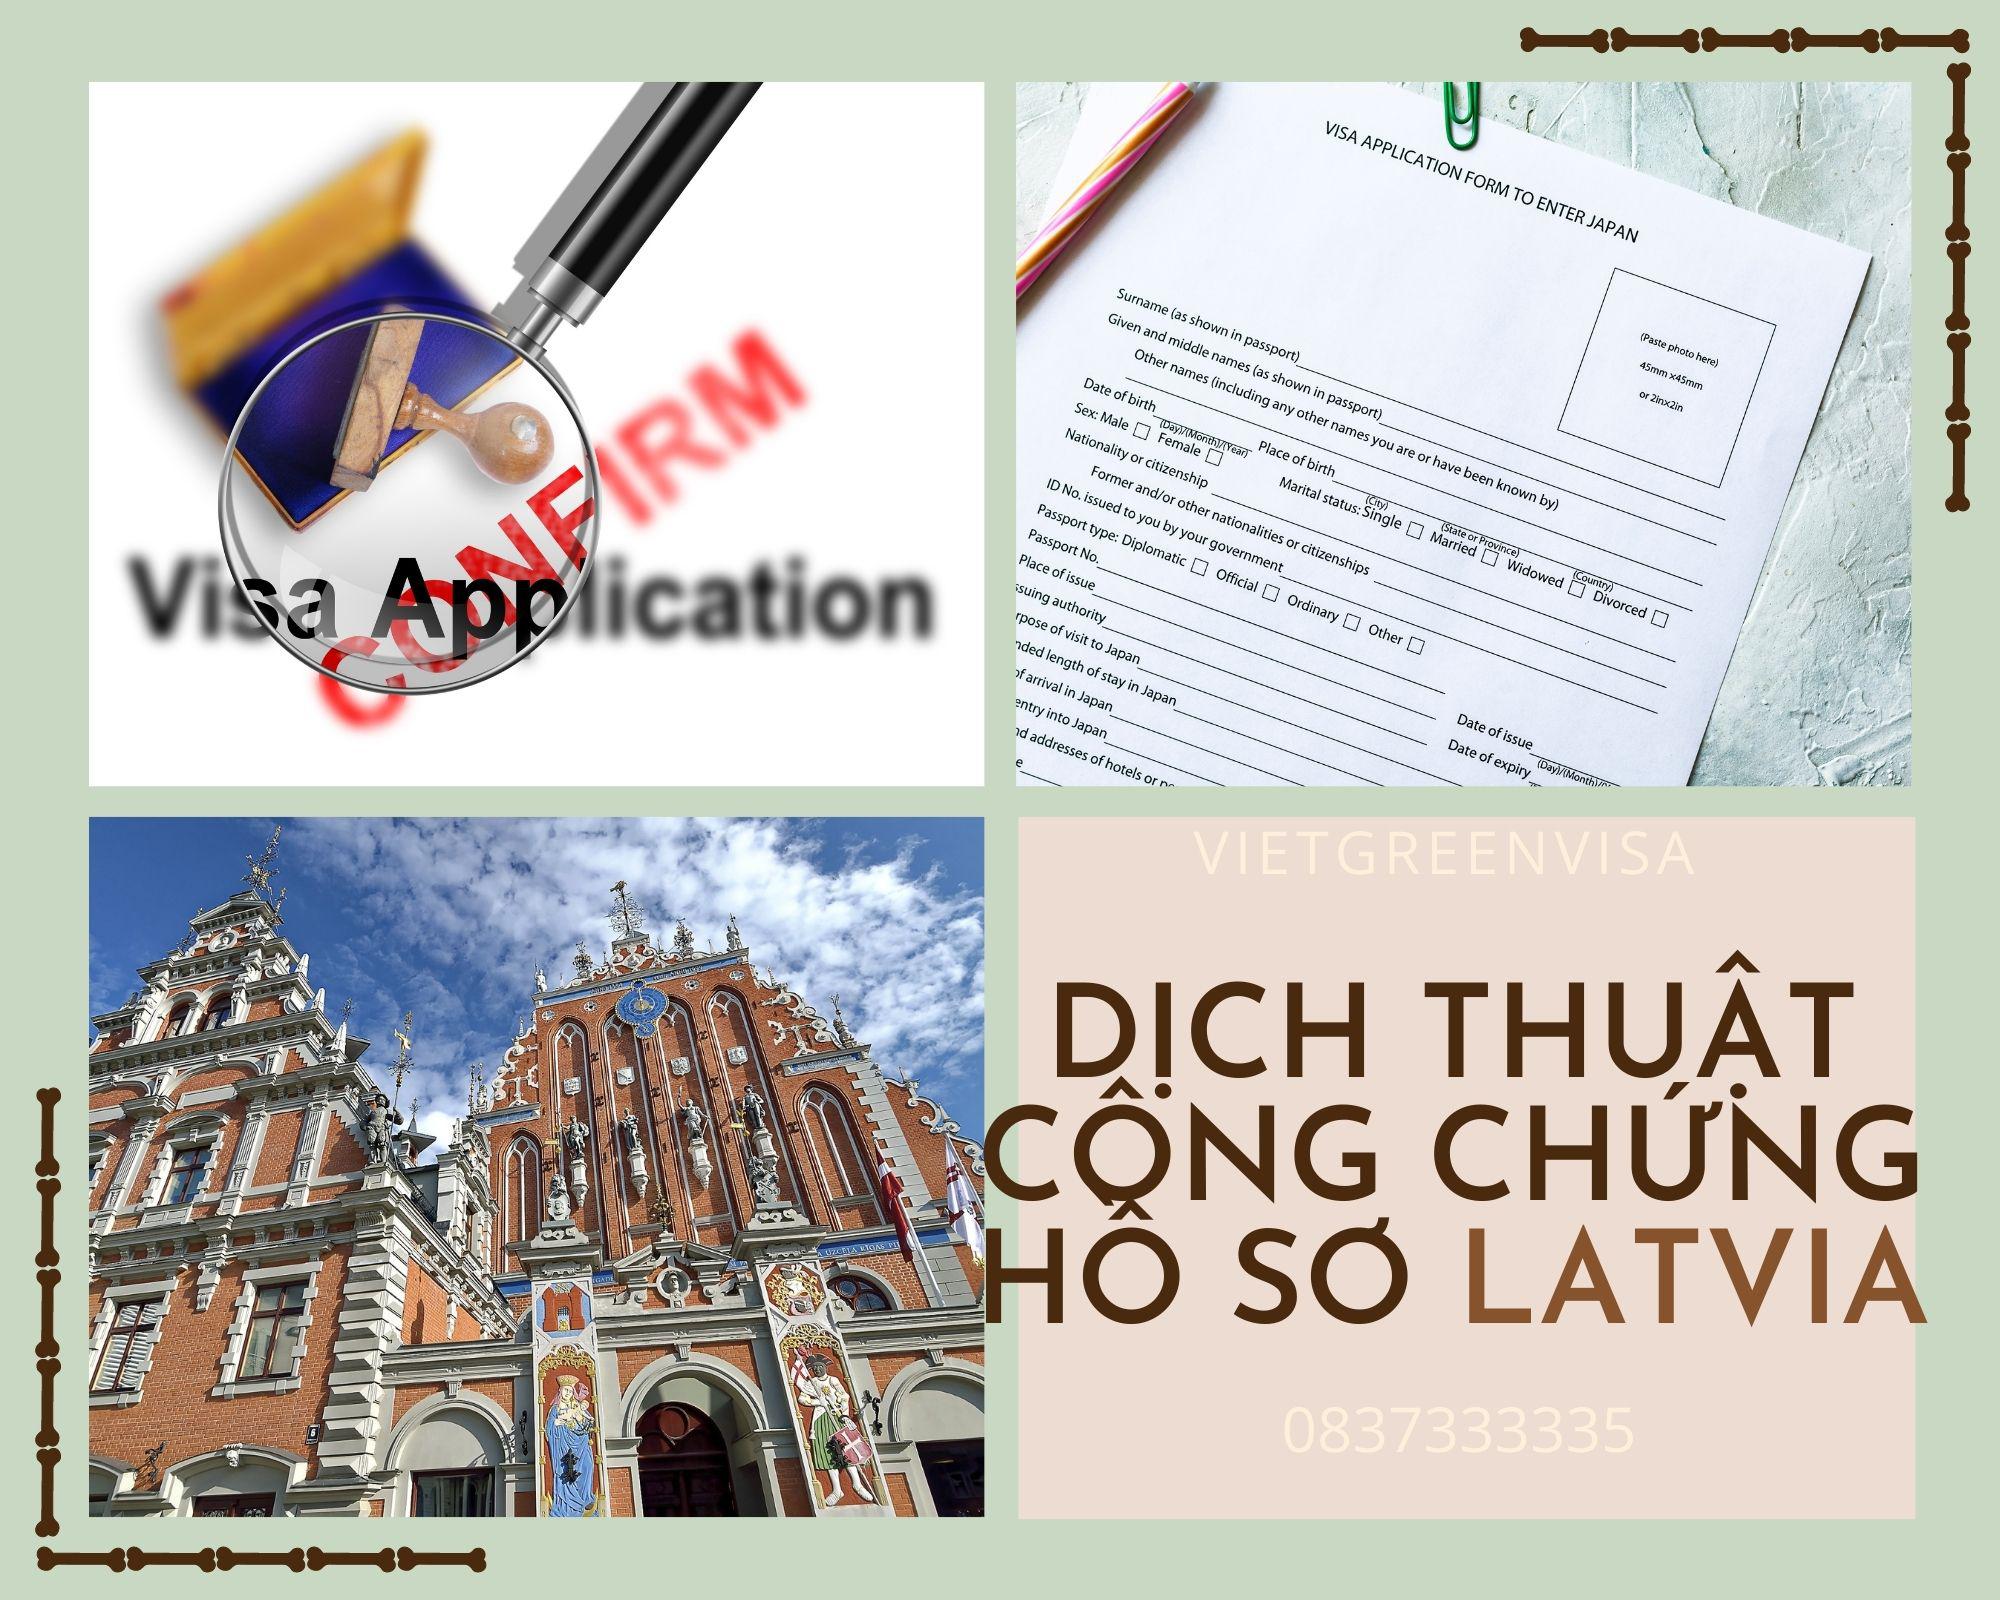 Dịch thuật công chứng hồ sơ visa du lịch Latvia nhanh gọn